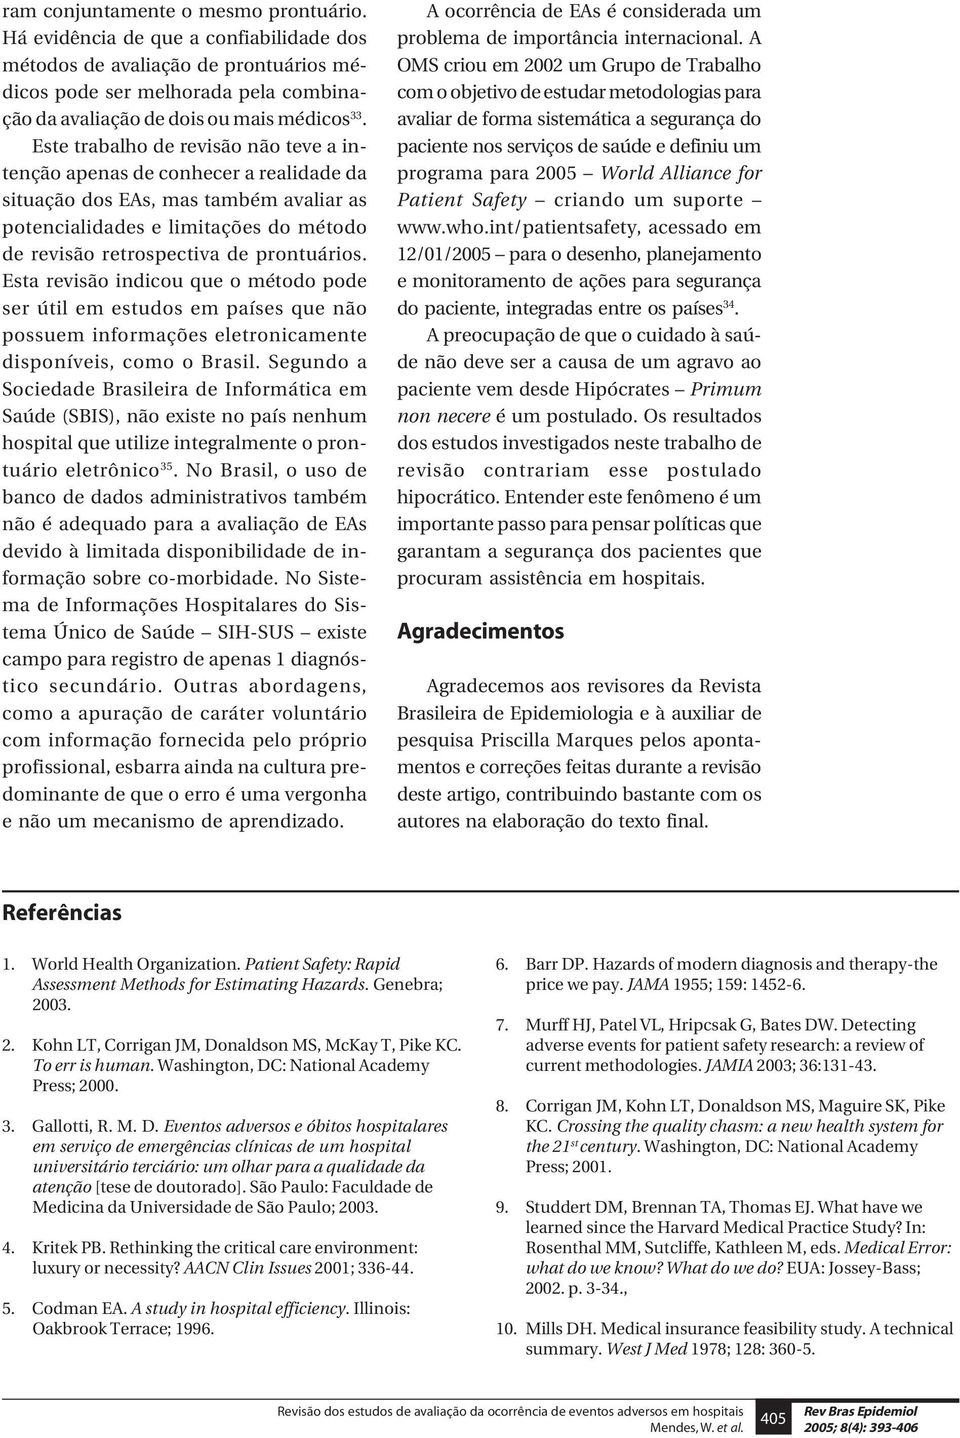 Esta revisão indicou que o método pode ser útil em estudos em países que não possuem informações eletronicamente disponíveis, como o Brasil.